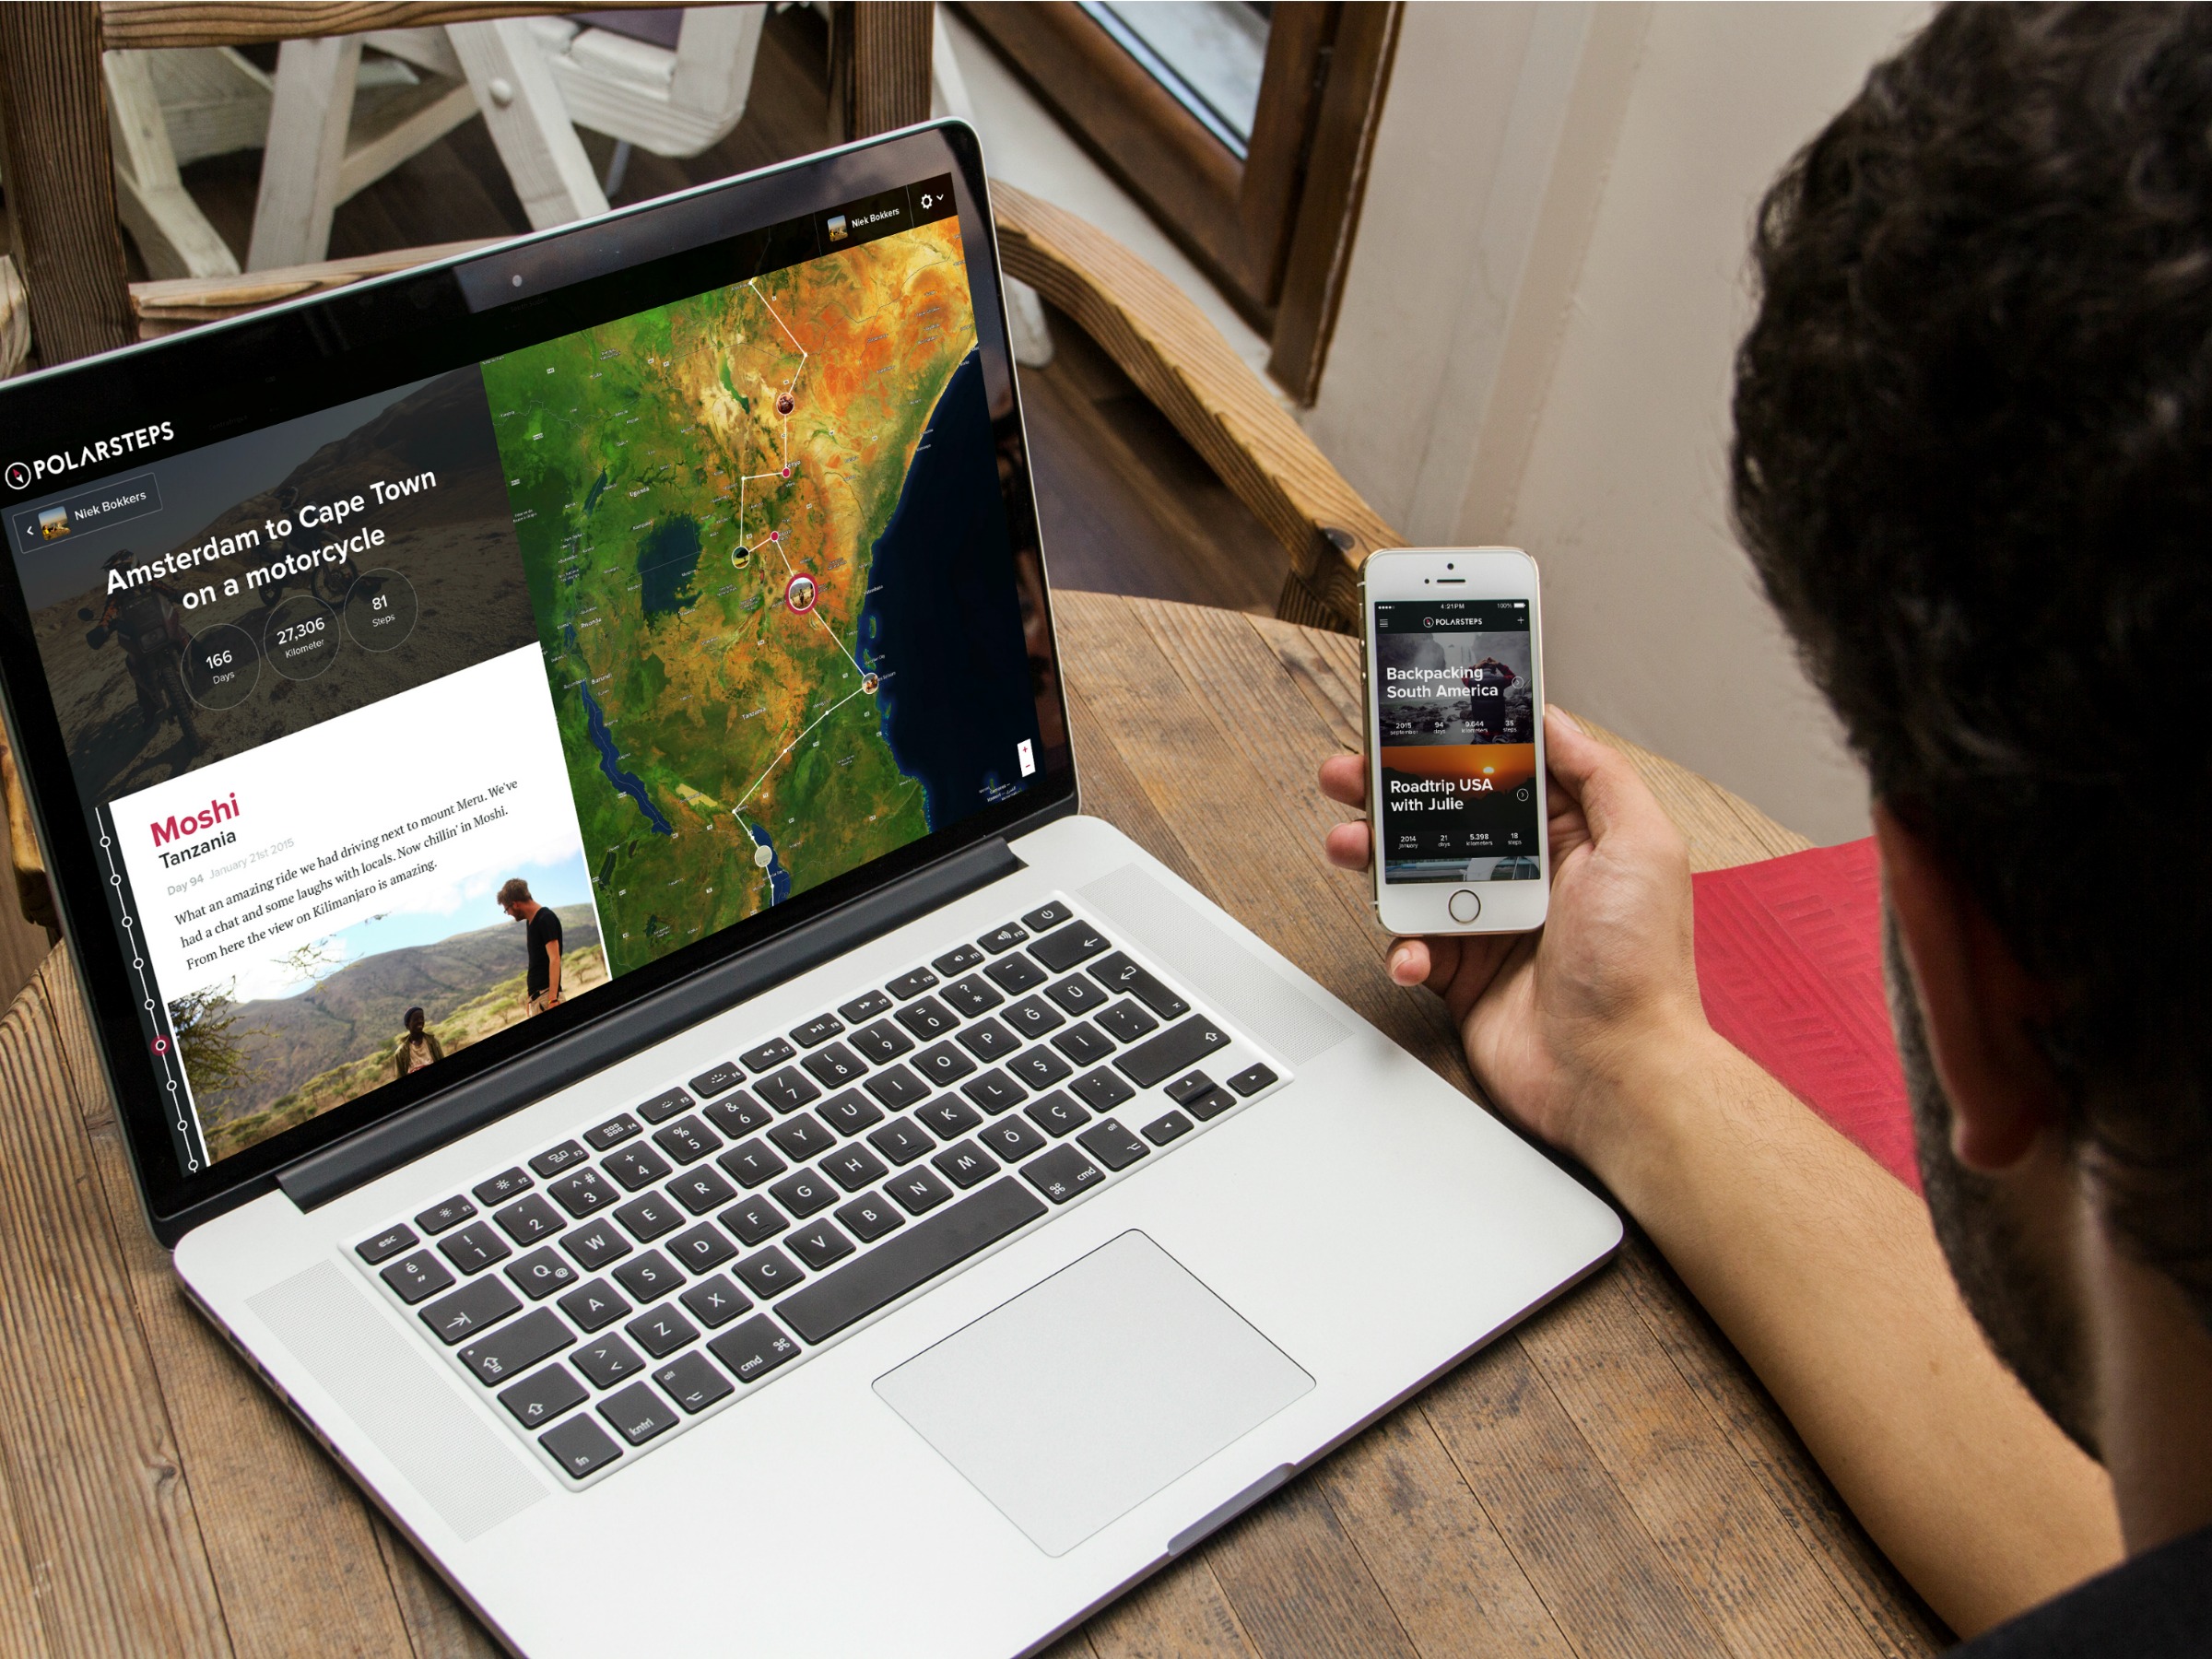 Via de app van Polarsteps kun je op vakantie automatisch je reis vastleggen zodat deze makkelijk te delen is met vrienden en familie thuis.